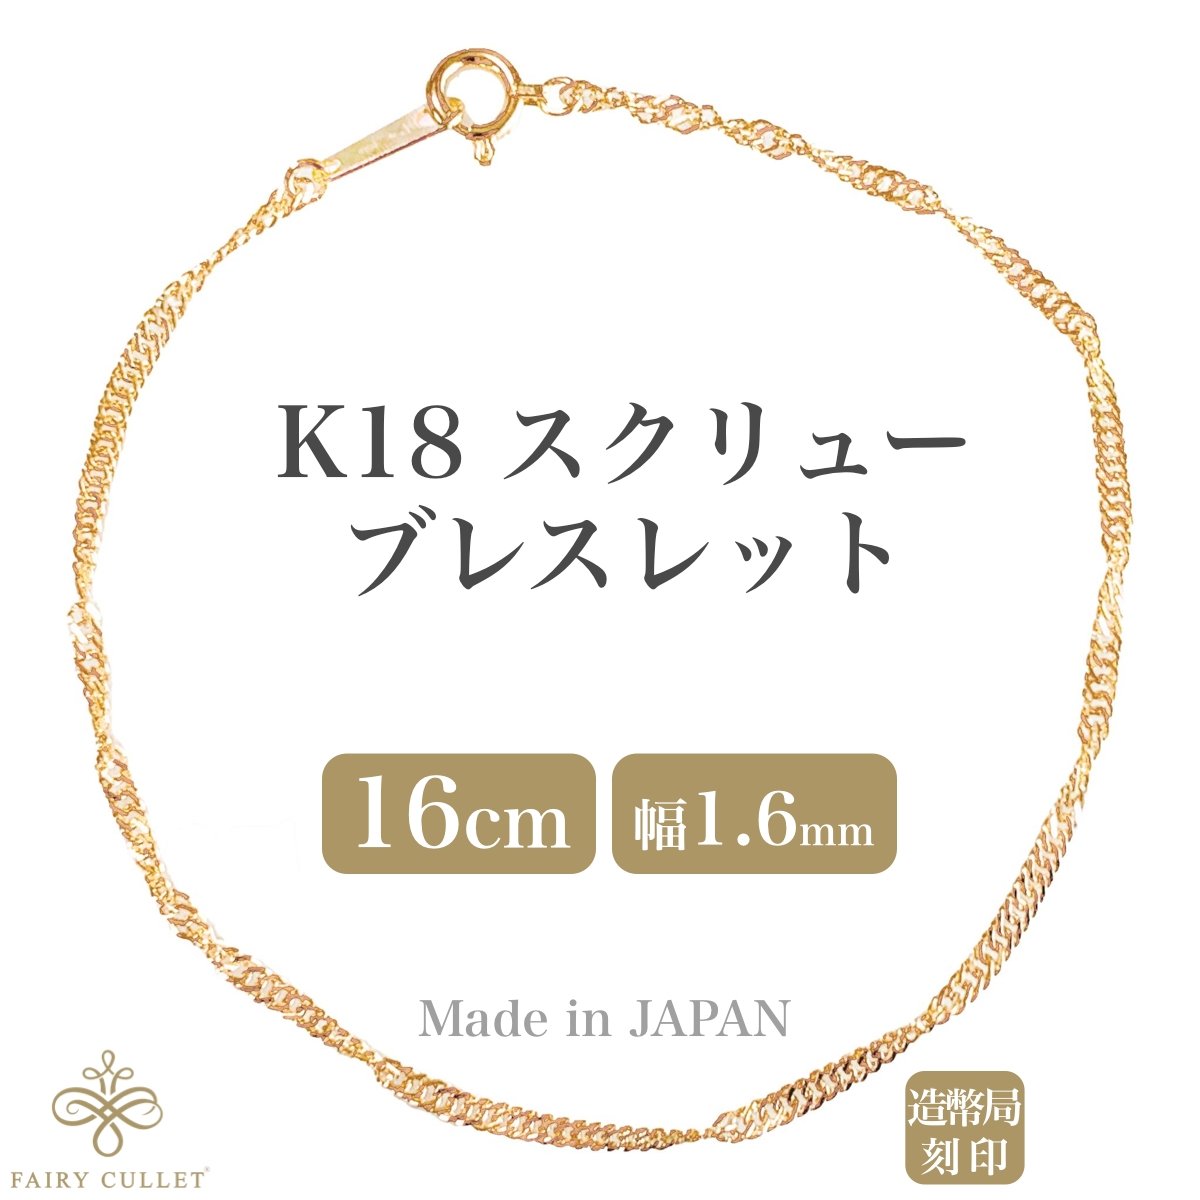 18金ブレスレット K18 スクリューチェーン 16cm 1.6mm幅 日本製 検定印 